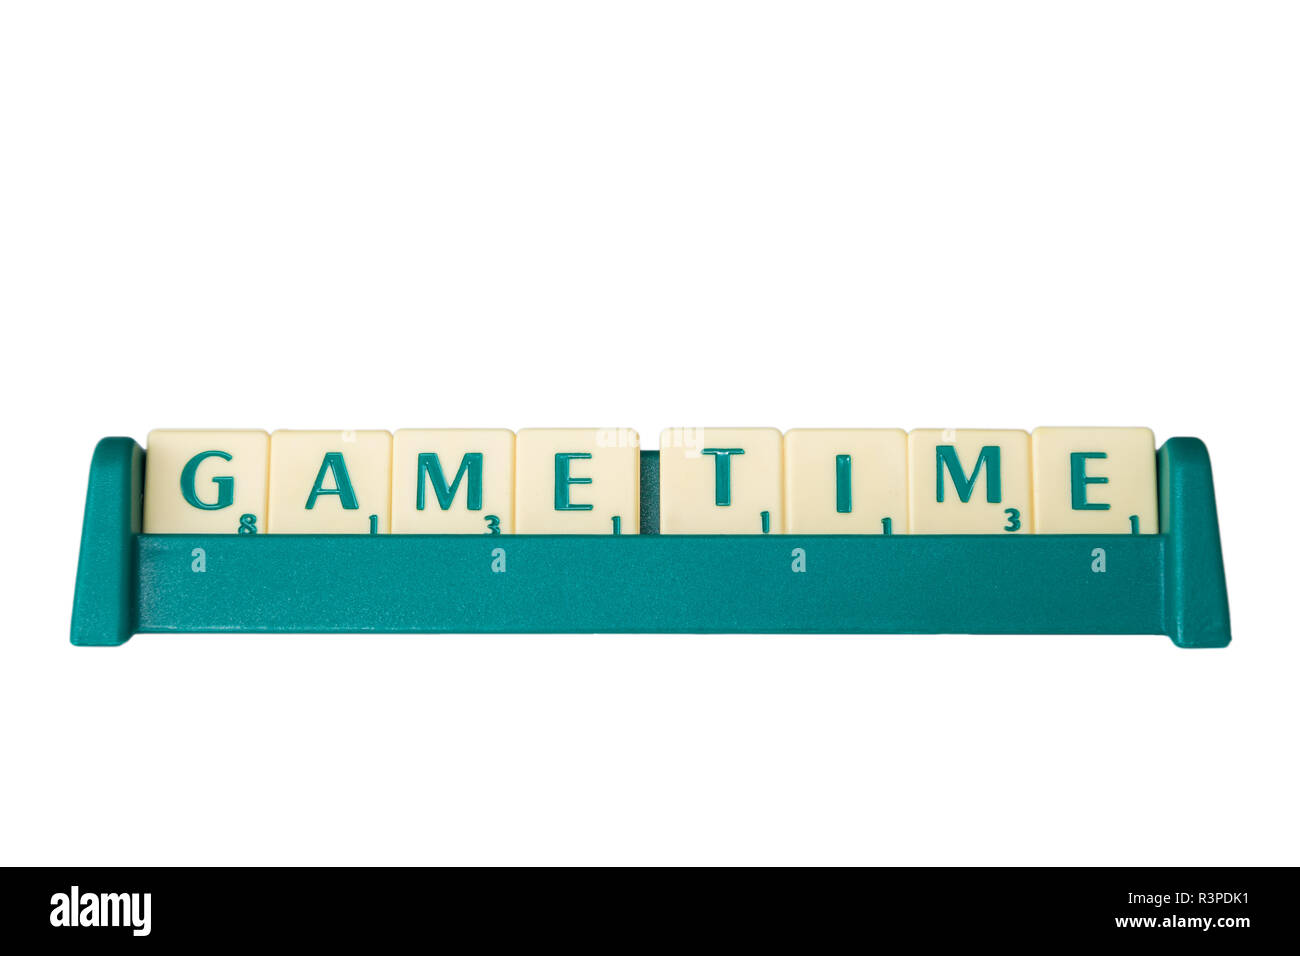 Jeu de Scrabble lettres avec valeur score sur un support formant la phrase 'Time'. Isolé sur fond blanc. Banque D'Images